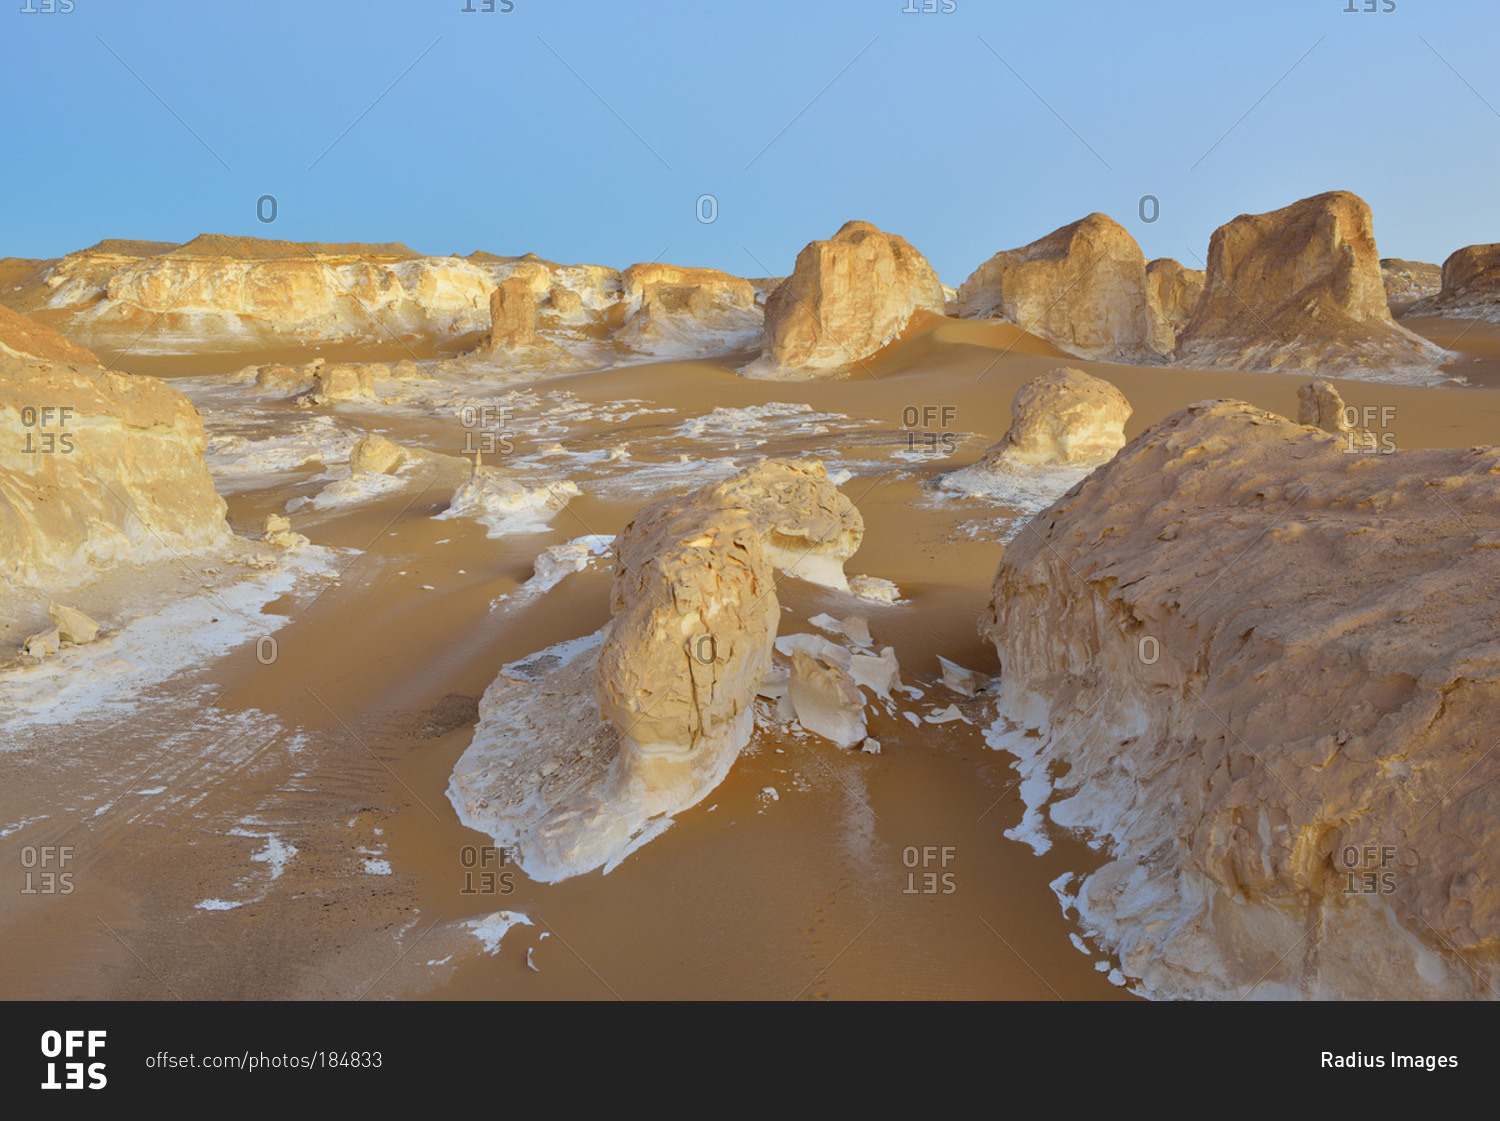 Rock formations in White Desert, Sahara Desert